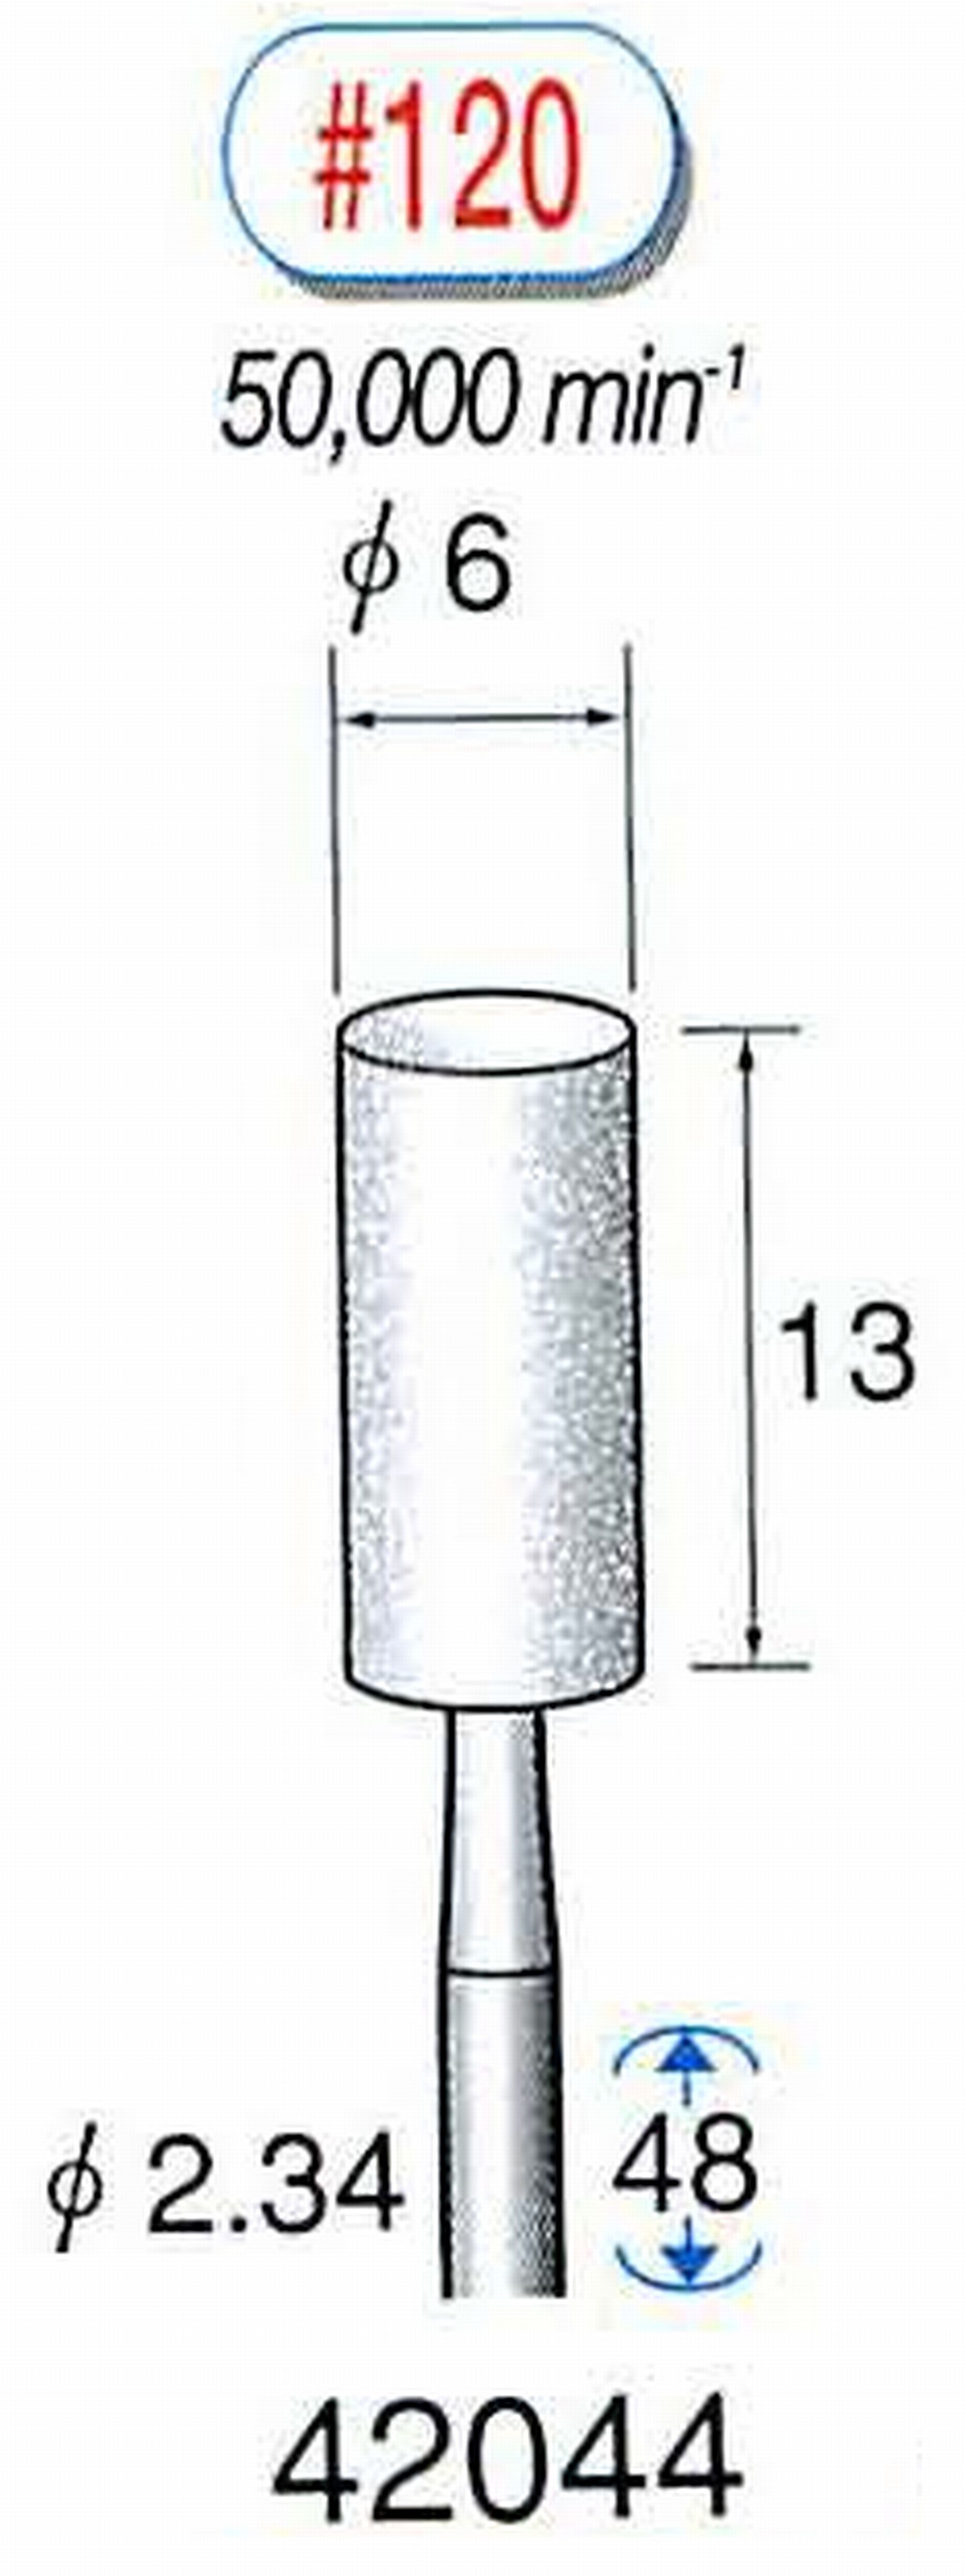 ナカニシ/NAKANISHI 軸付砥石(WA砥粒) 軸径(シャンク) φ2.34mm 42044